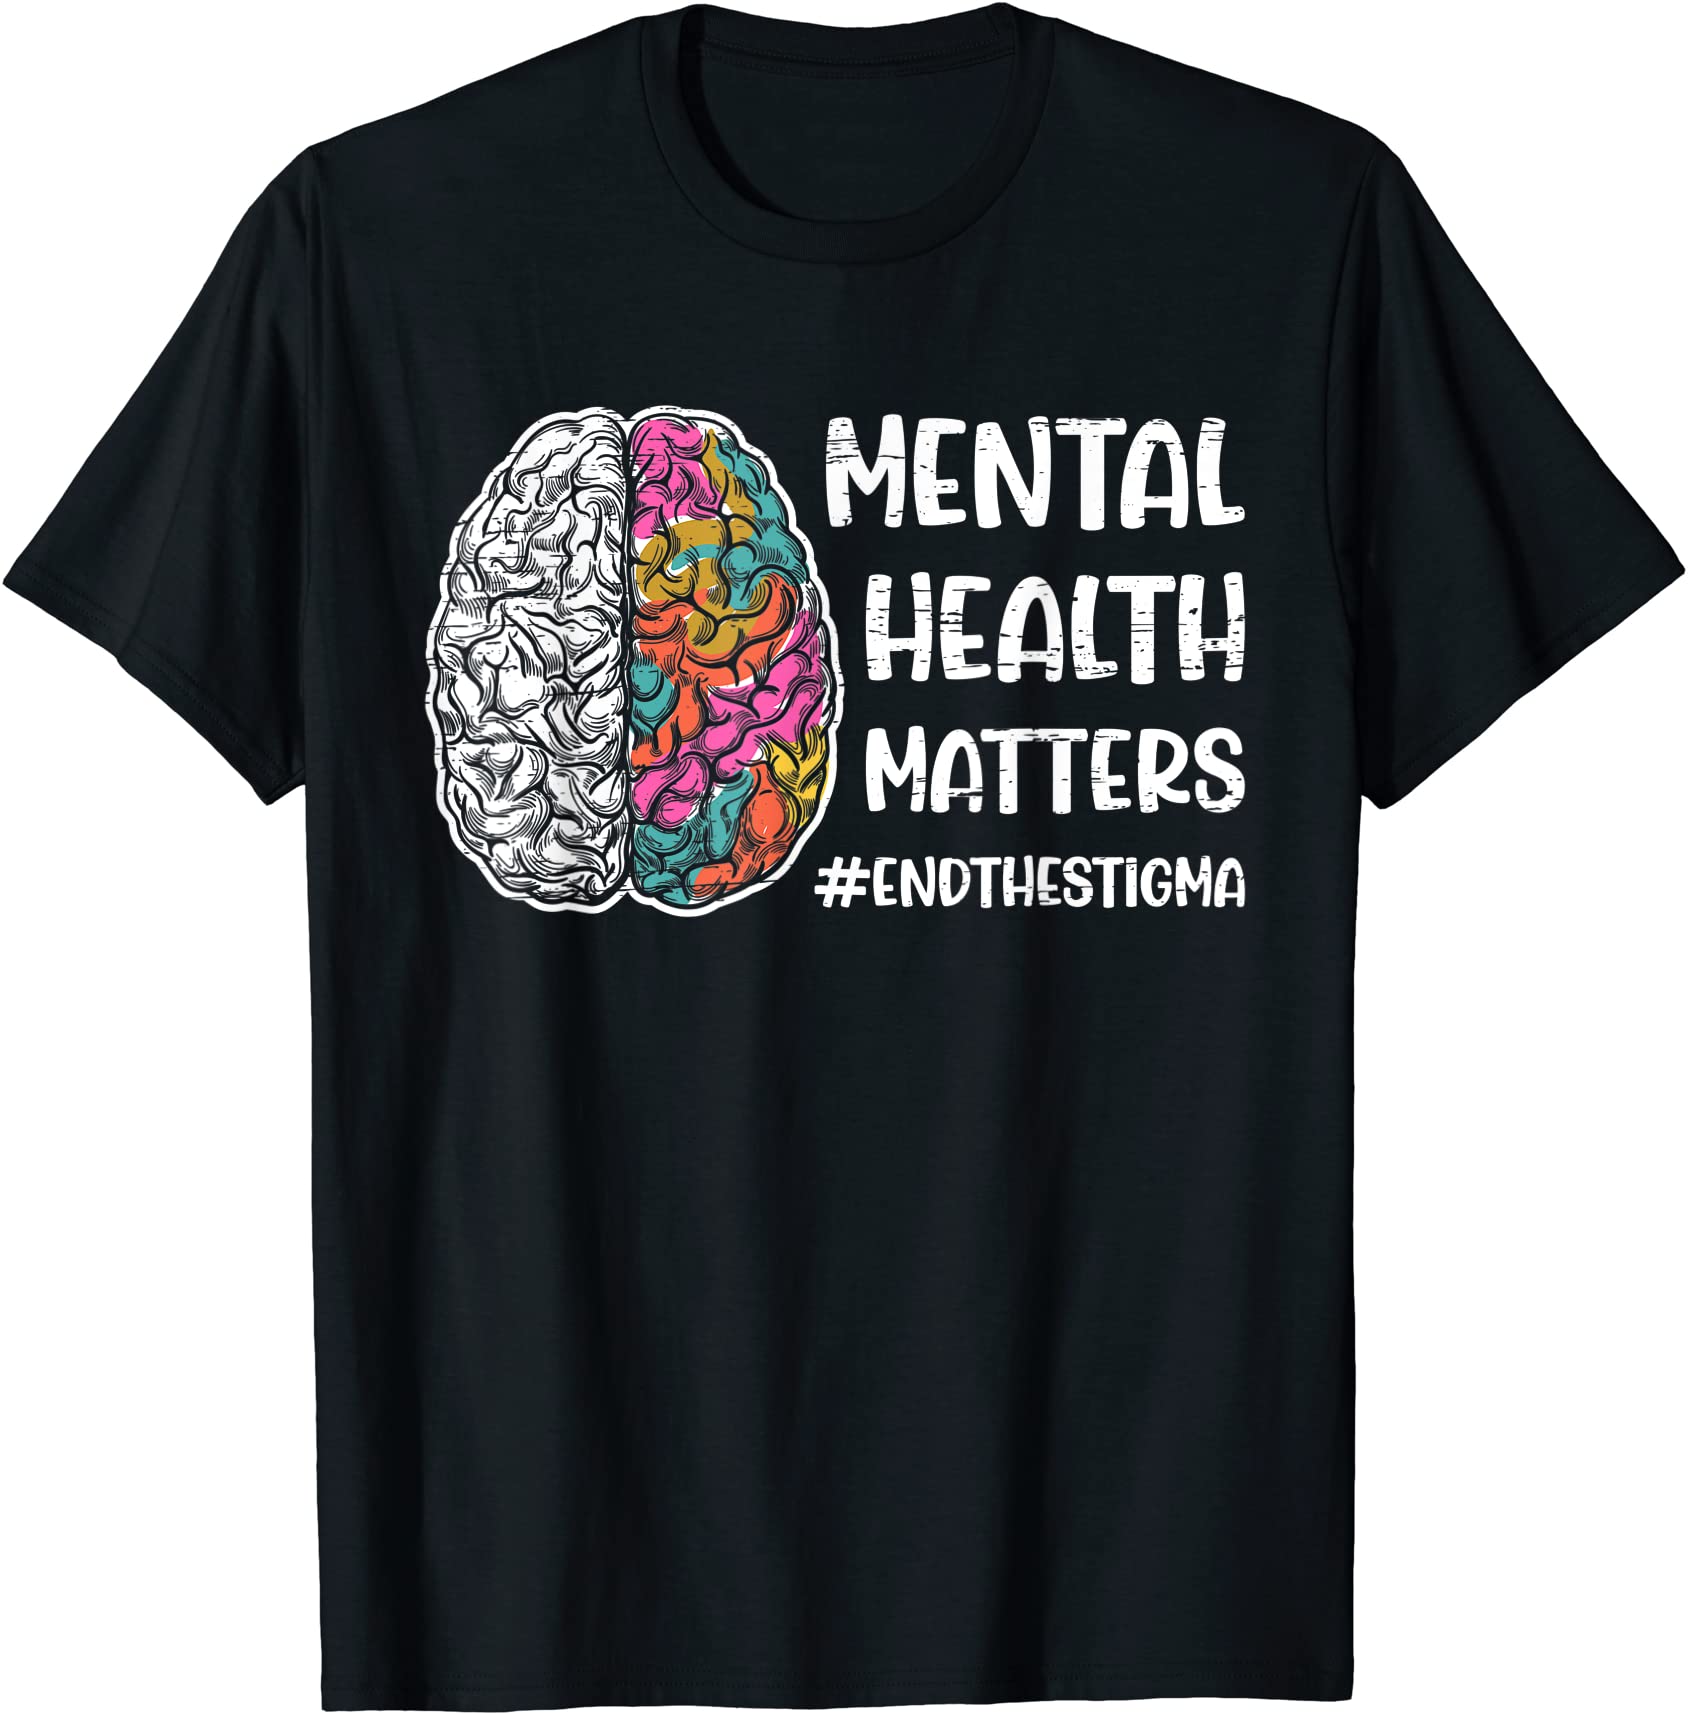 health matters mental mental t shirt men - Buy t-shirt designs